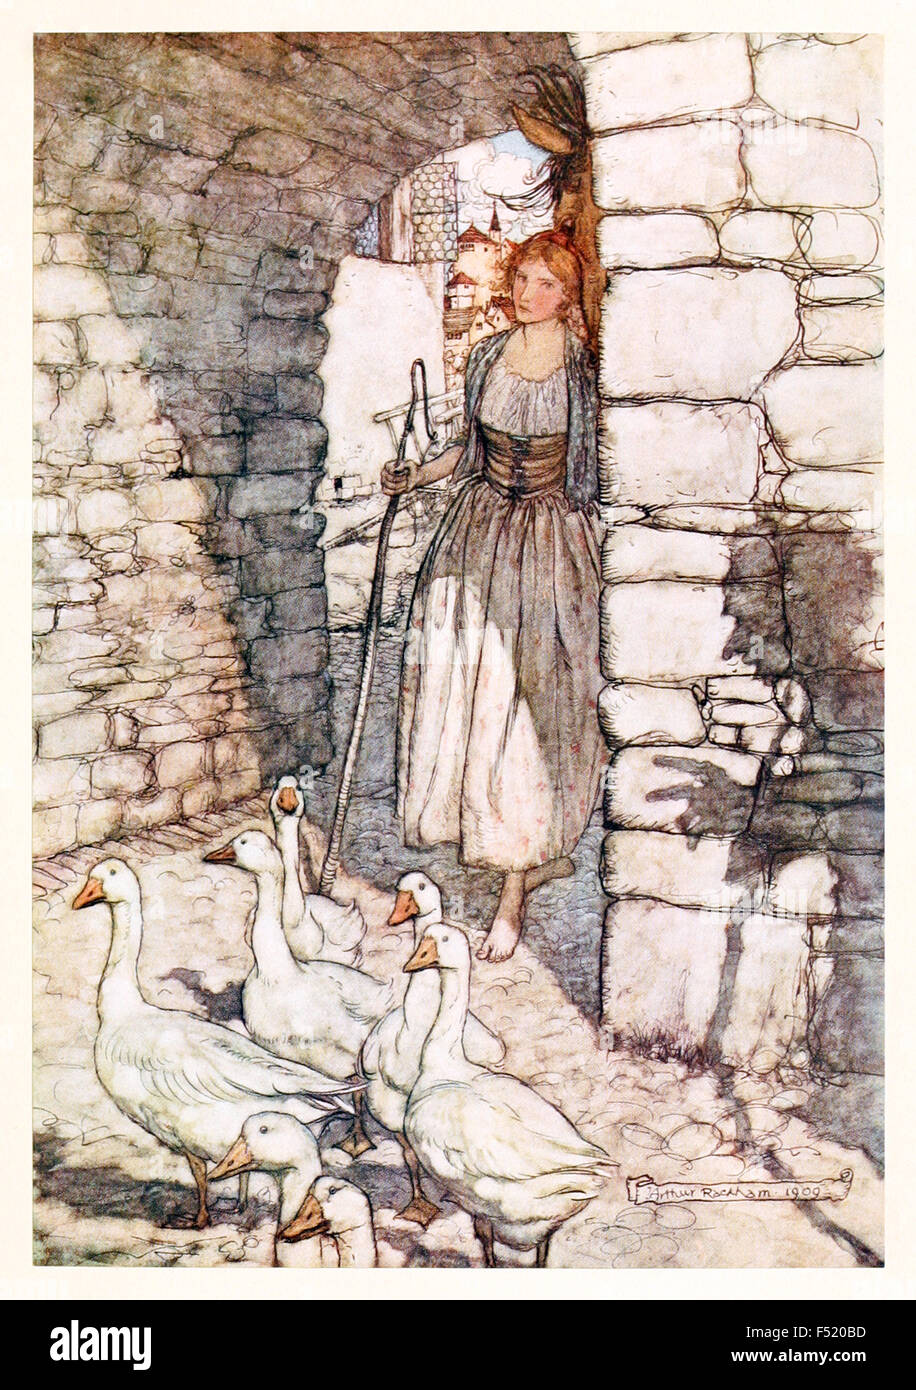 'Hélas ! Chers Falada, que hangest.' de 'l'Goosegirl' dans 'Les contes des frères Grimm's', illustration par Arthur Rackham (1867-1939). Voir la description pour plus d'informations. Banque D'Images